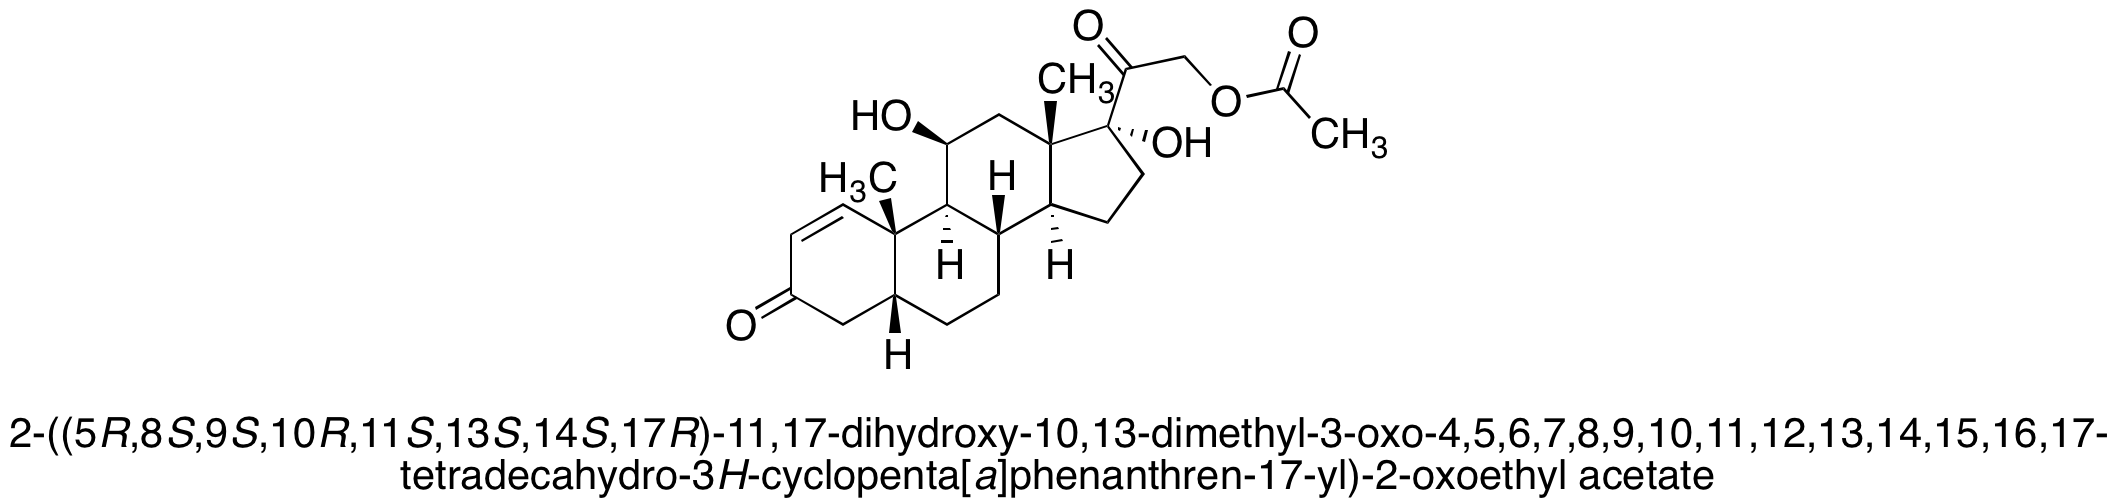 5 β-4,5-Dihydro Prednisolone 21-Acetate